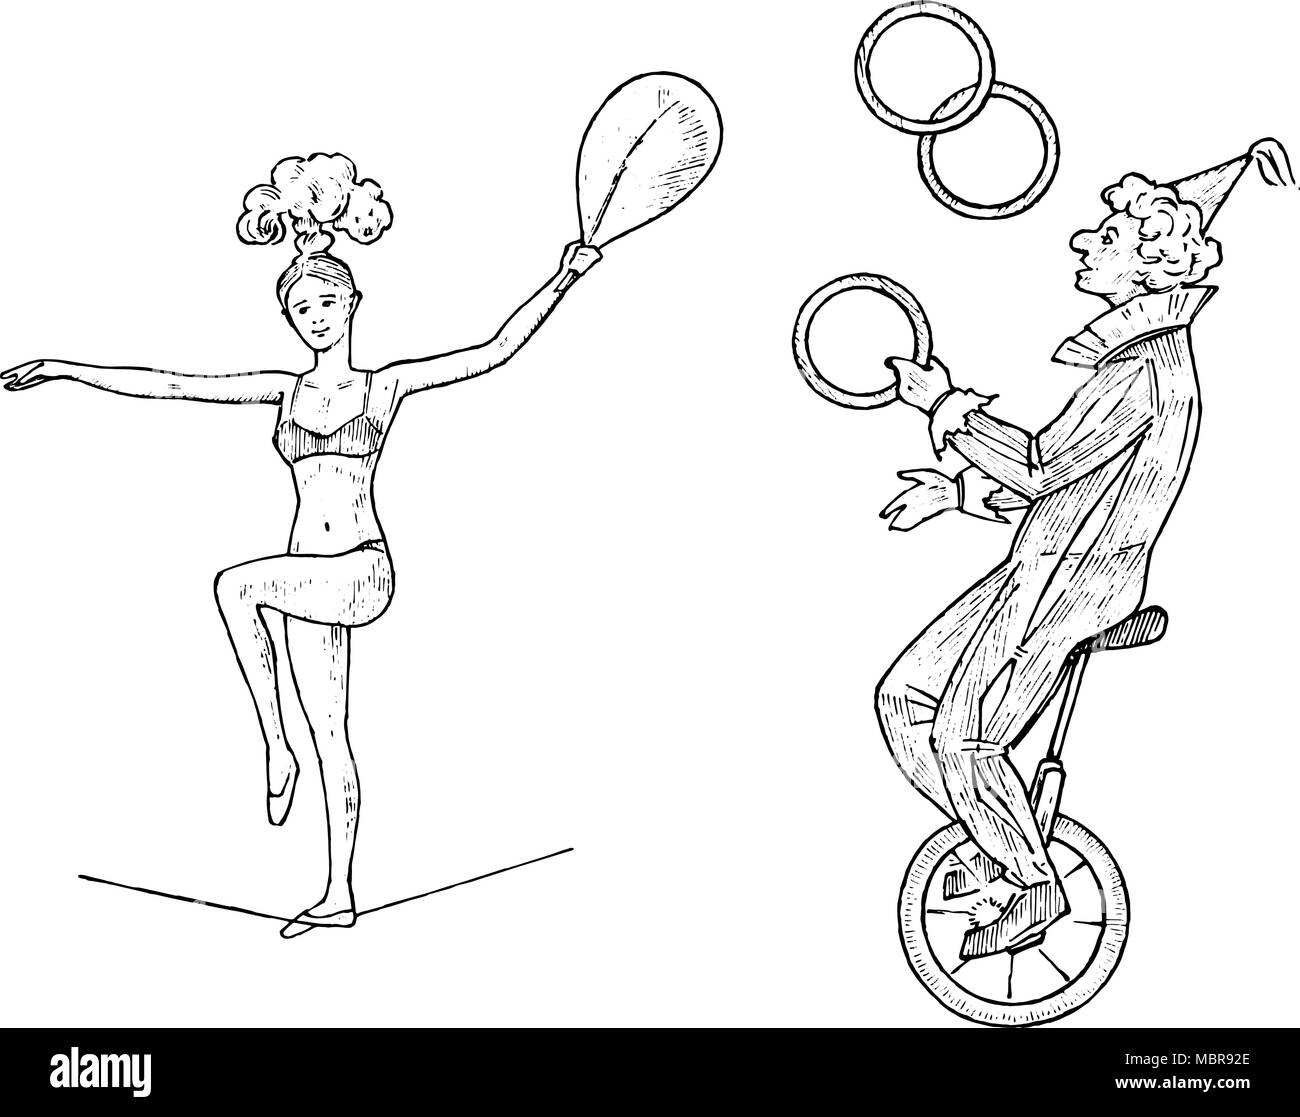 Mann als Clown im Zirkus rennt mit Hupe Stock Illustration